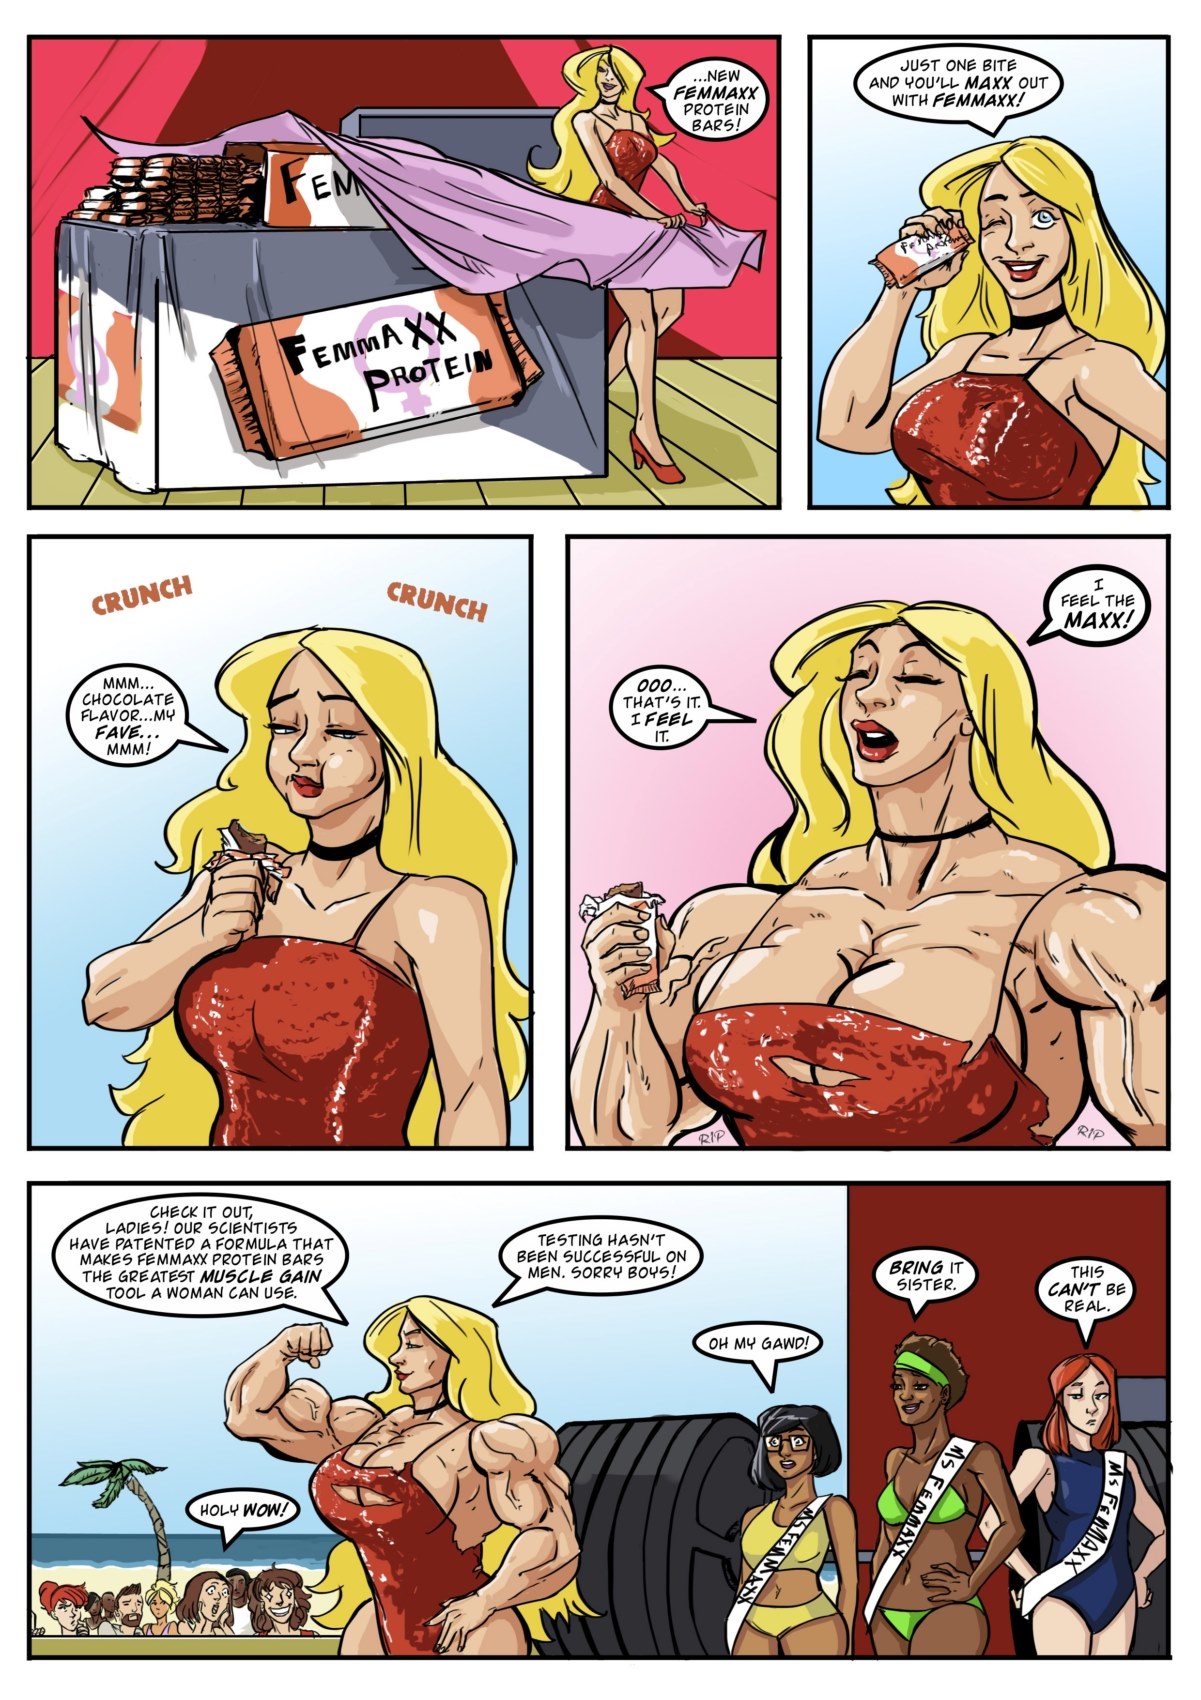 Muscular female western porn comic